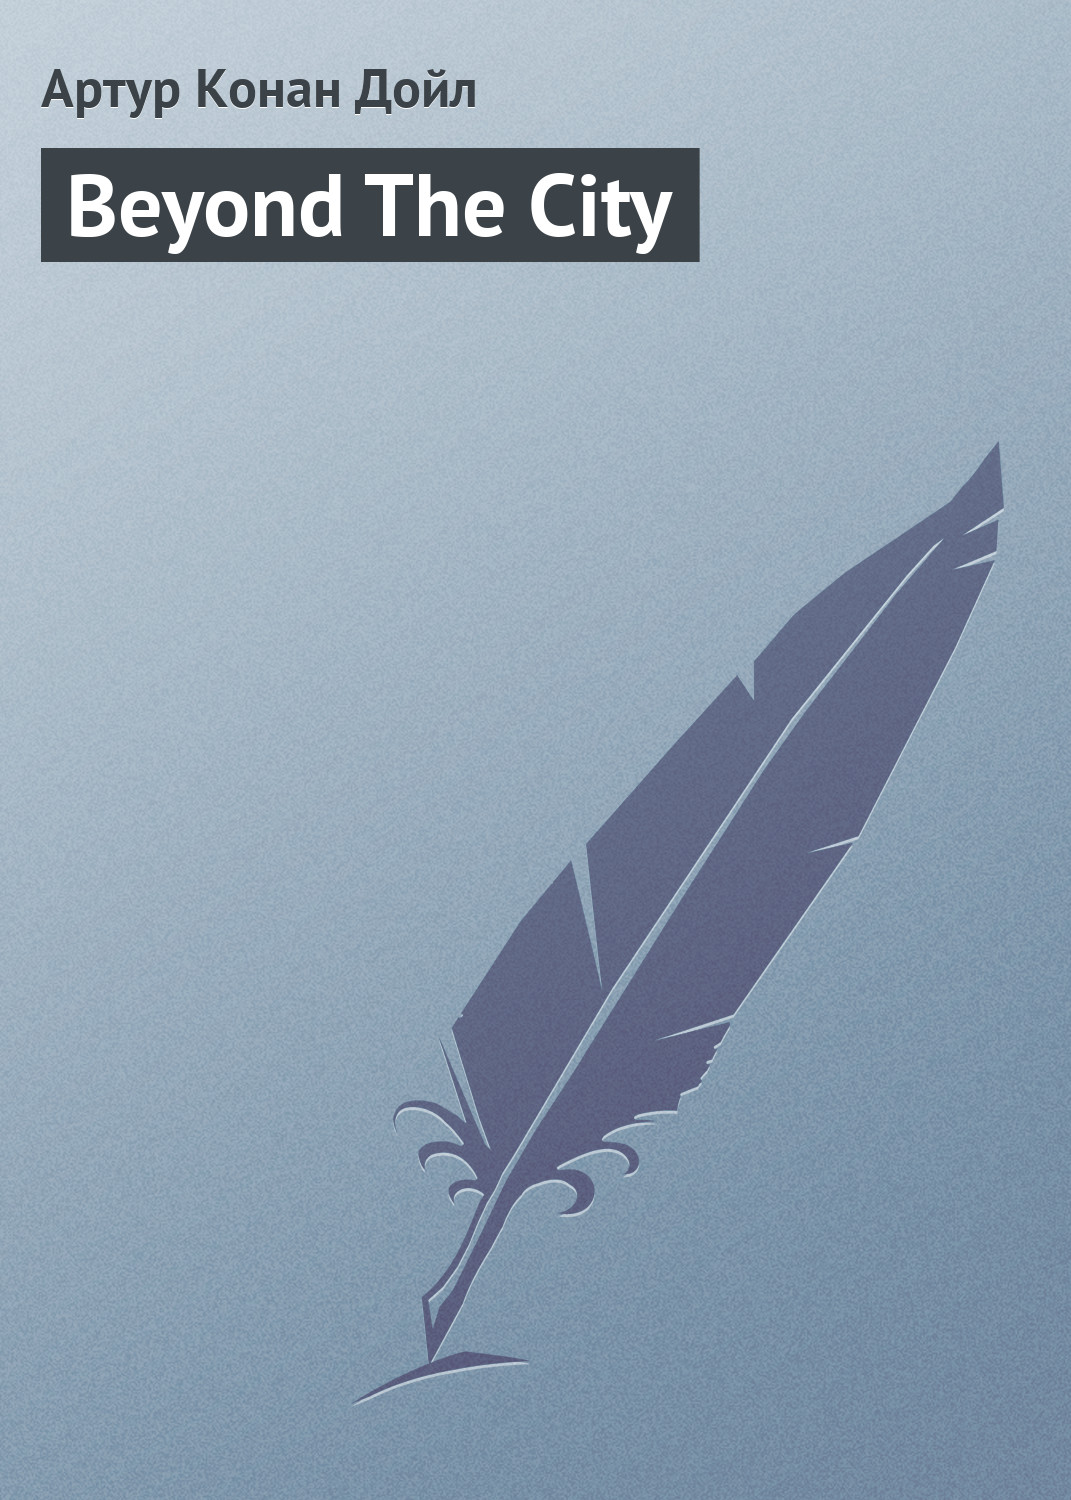 Книга Beyond The City из серии , созданная  Arthur Conan Doyle, может относится к жанру Зарубежная классика, Классическая проза. Стоимость электронной книги Beyond The City с идентификатором 118900 составляет 29.95 руб.